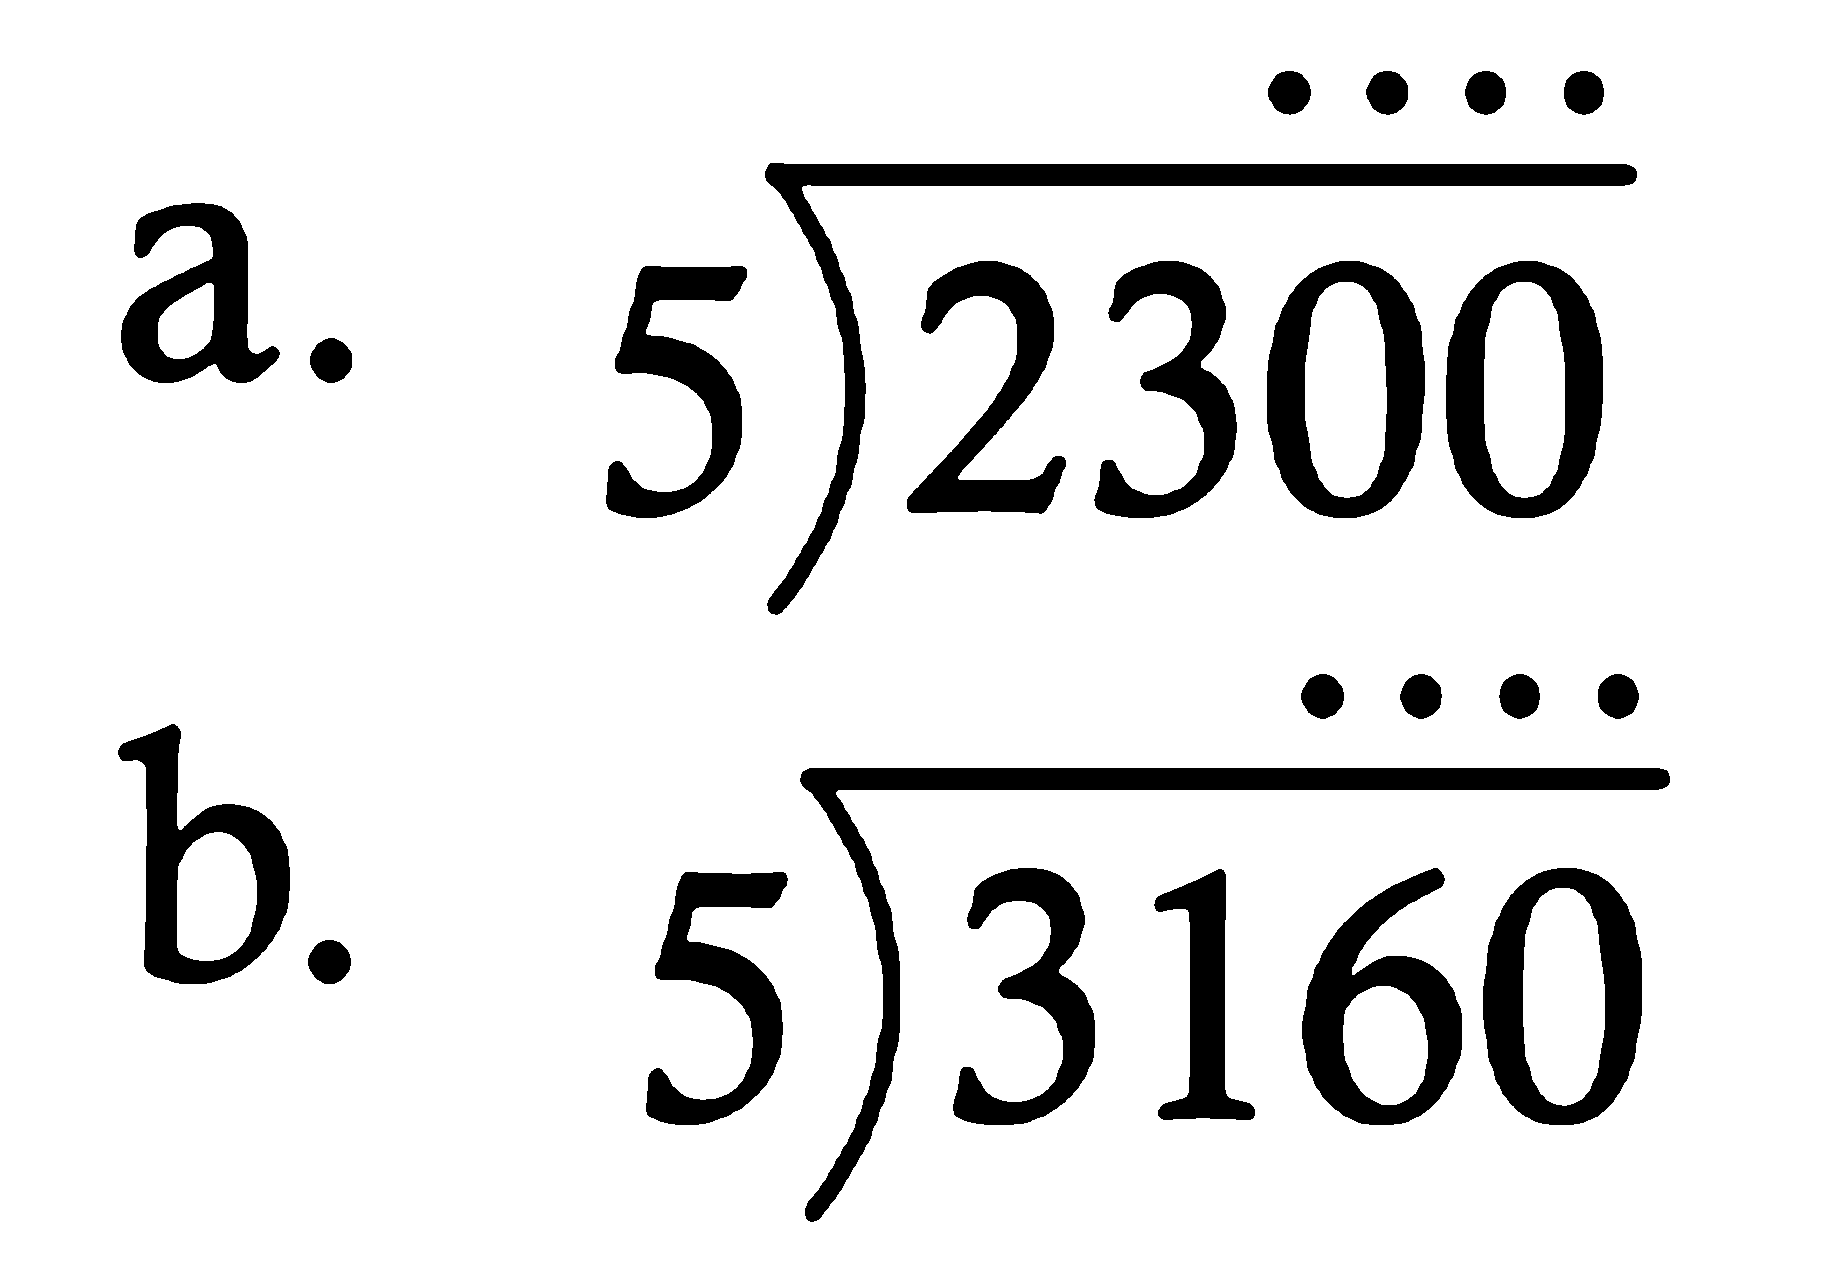 a. 2300 : 5 
b. 3160 : 5